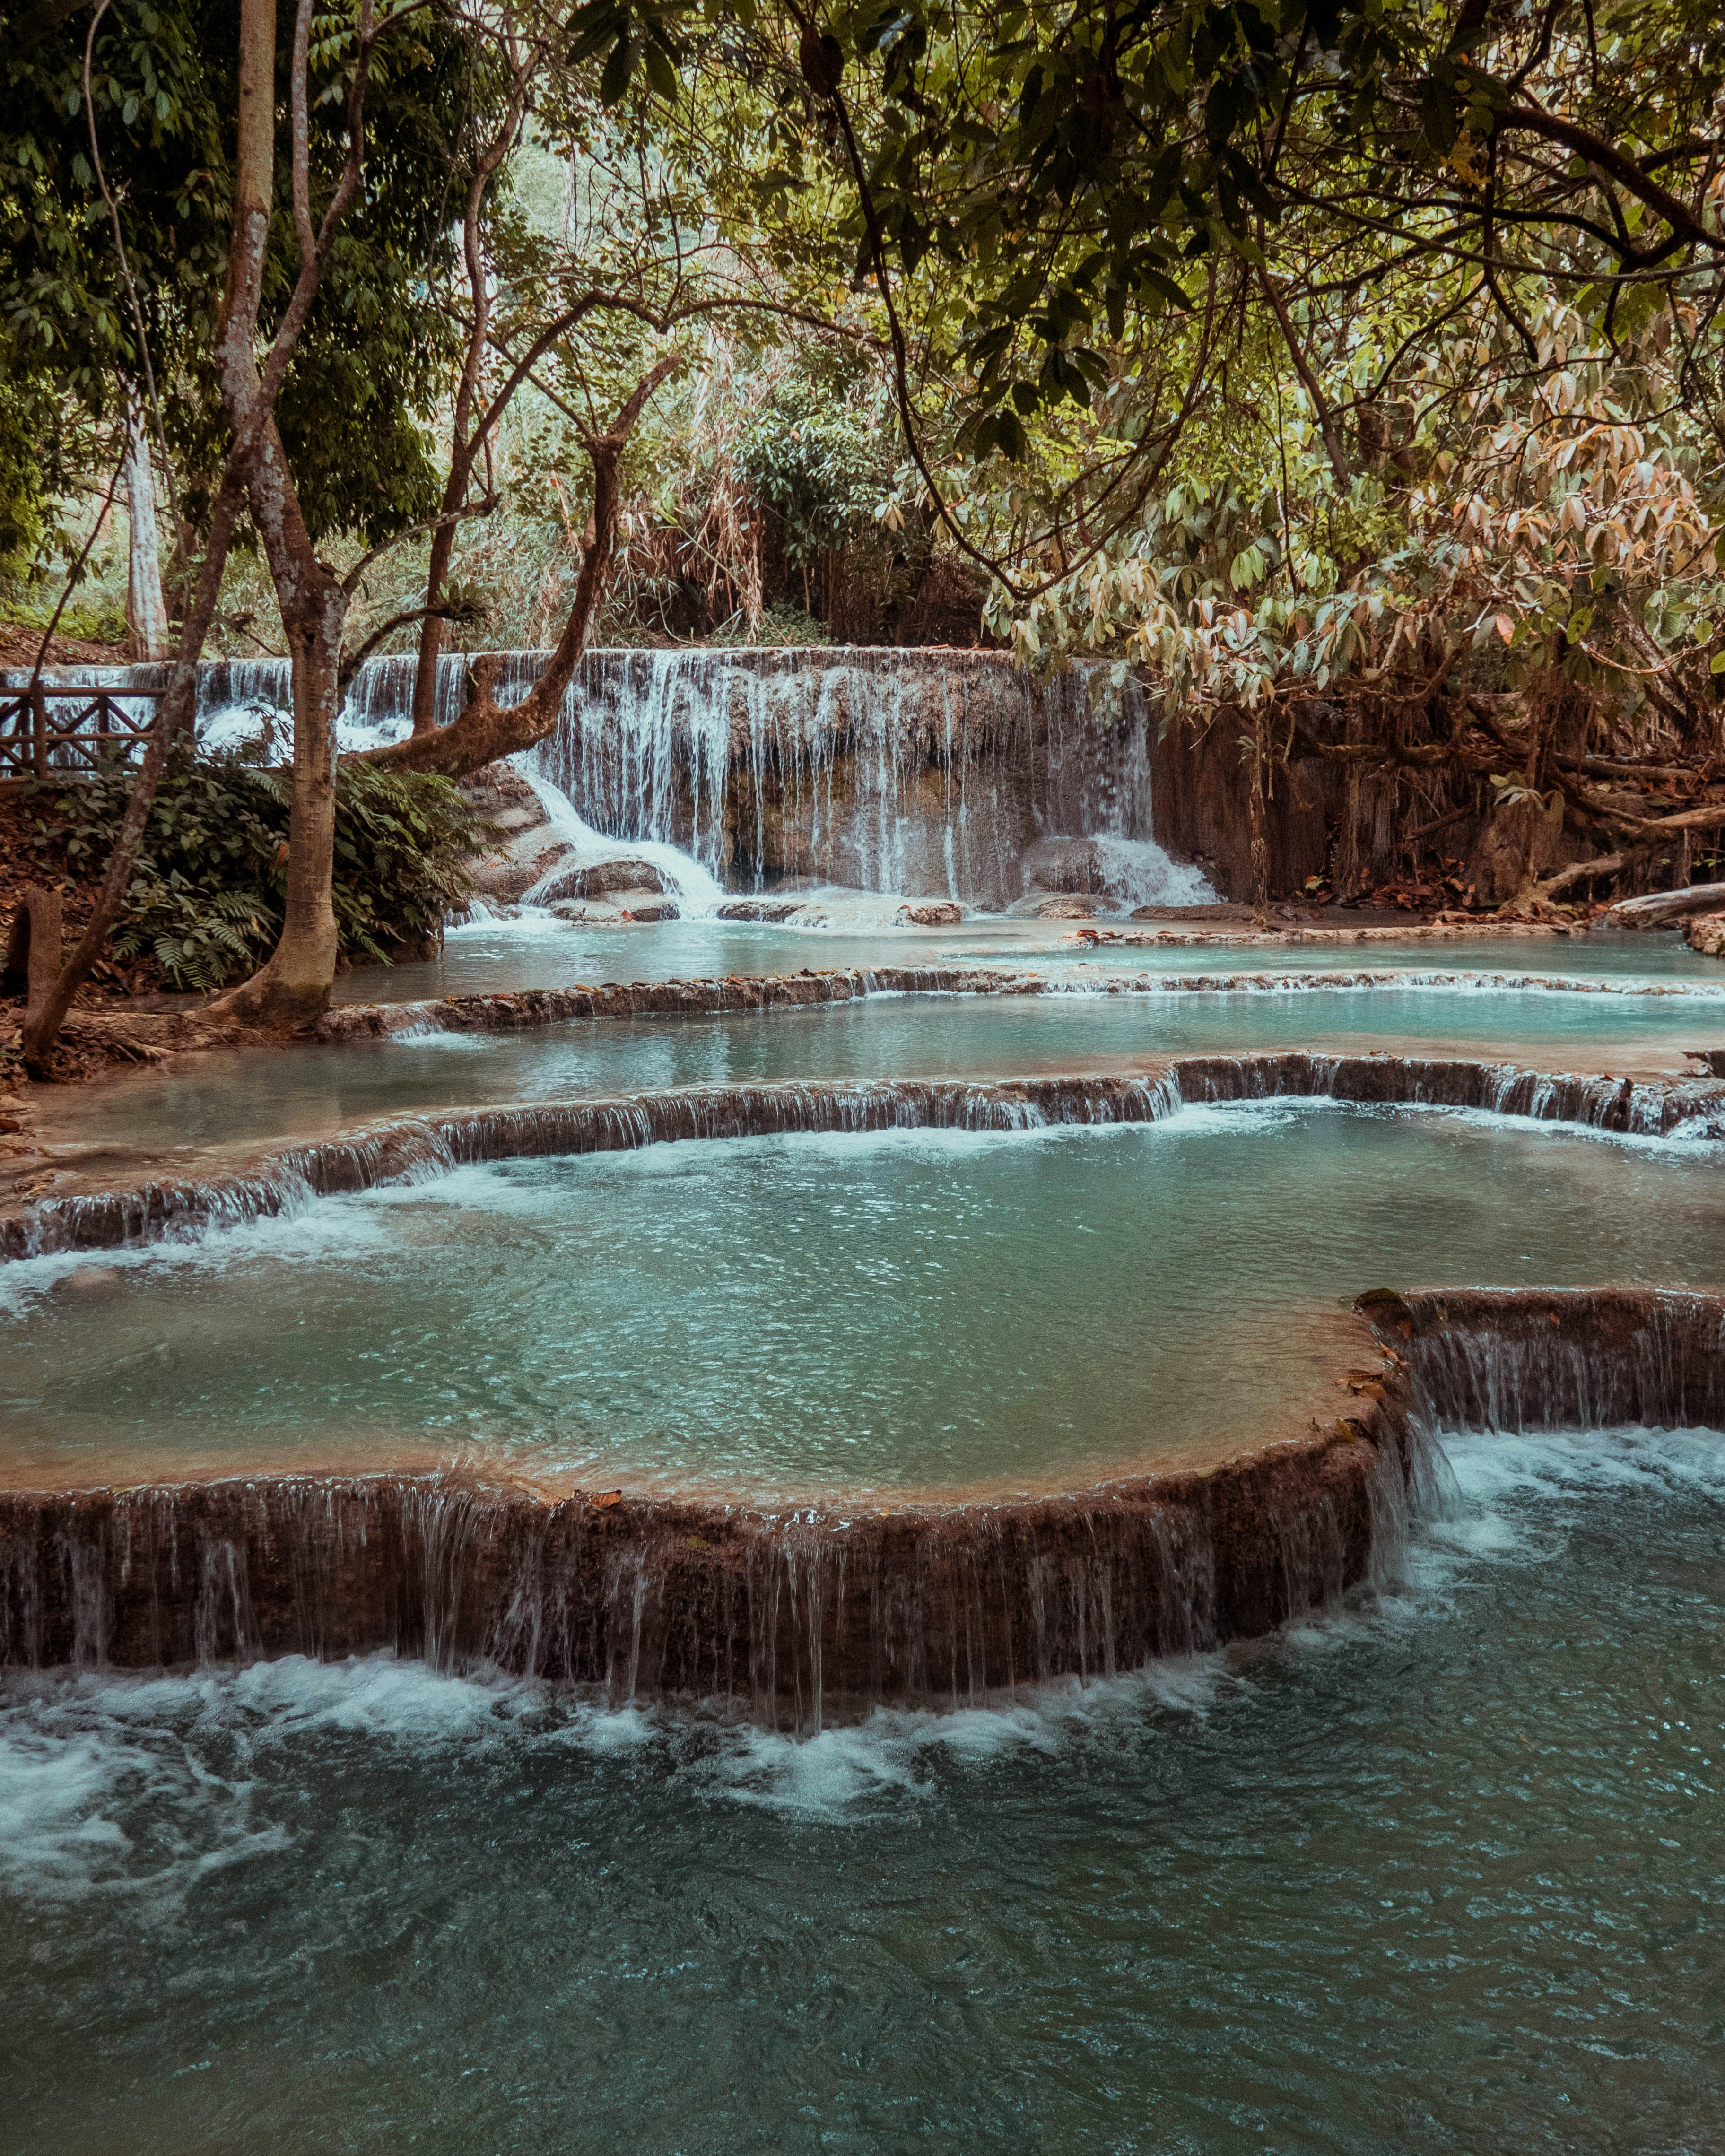 Lower-tier cascades at Kuang Si Falls near Luang Prabang, Laos.